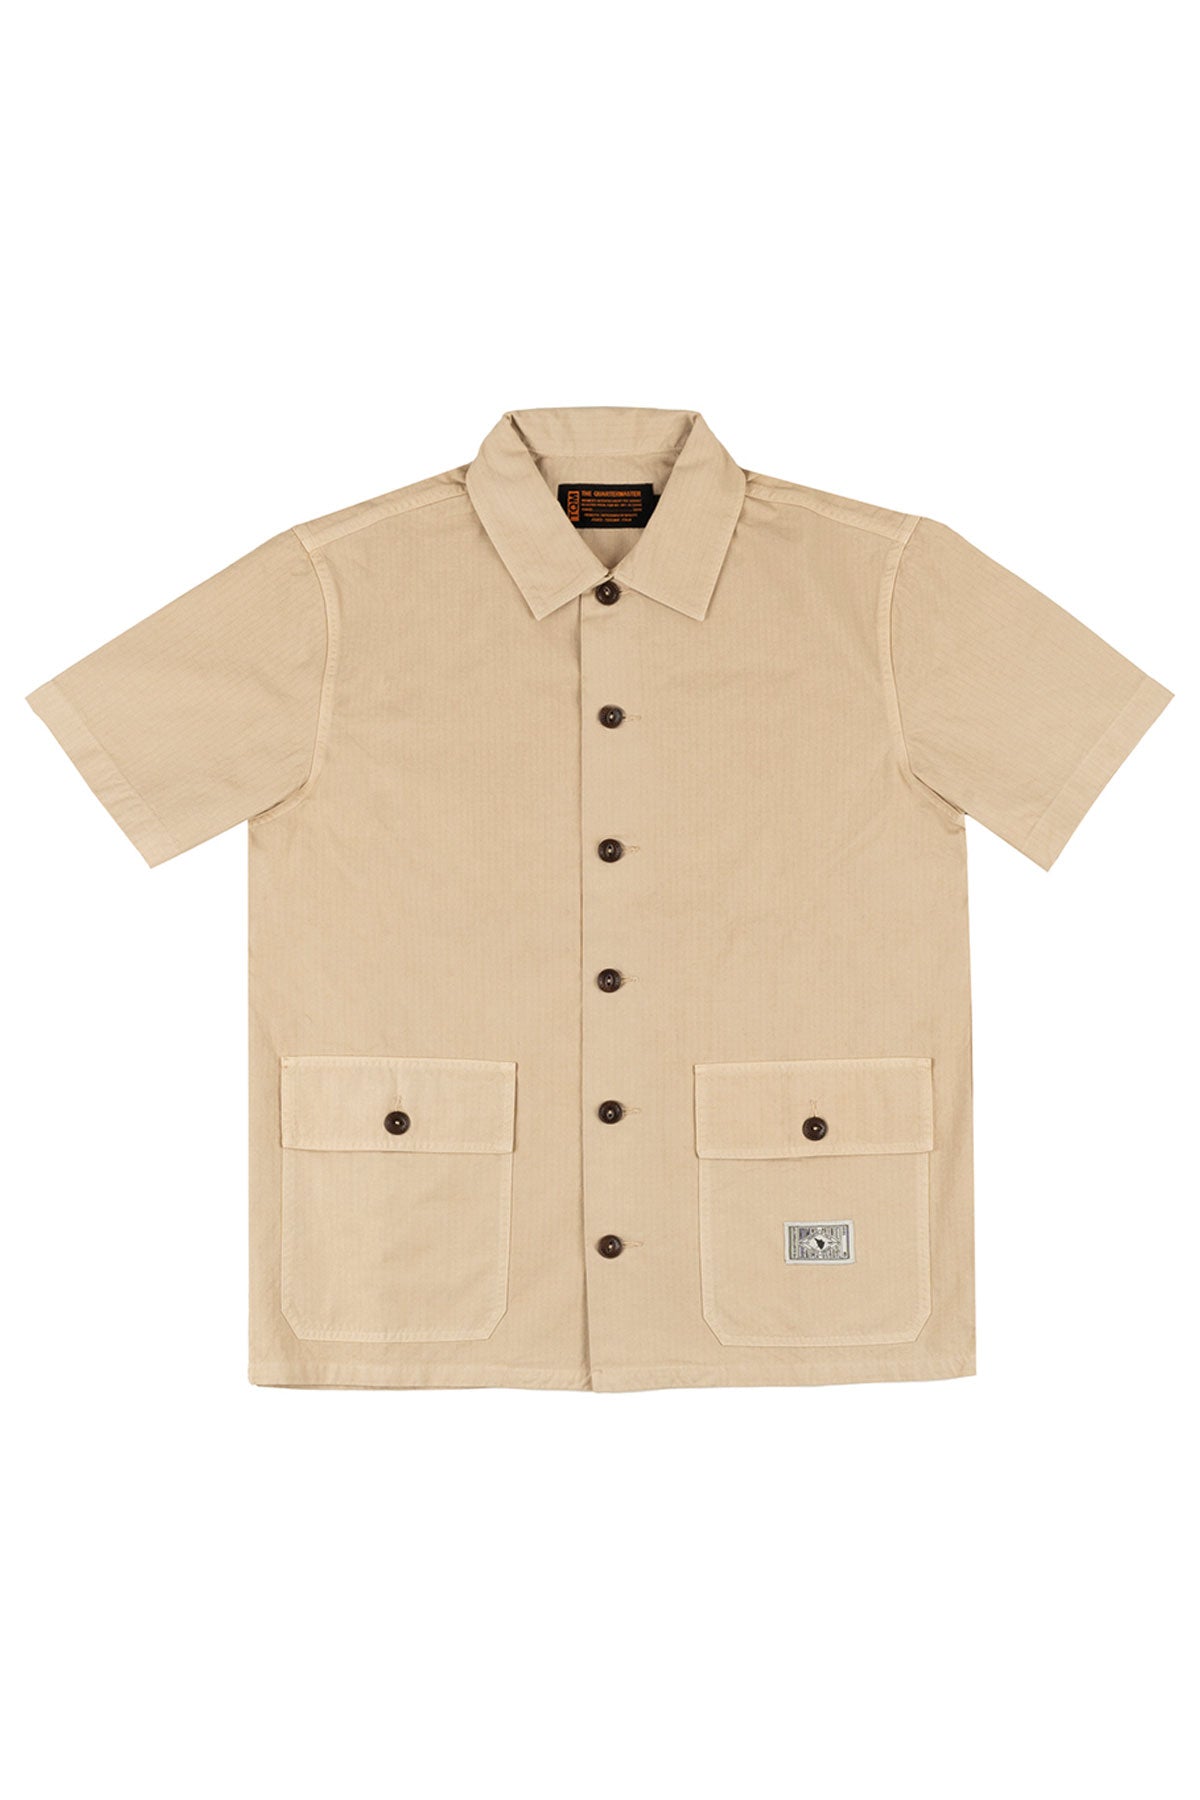 The Quartermaster - Safari Tropical Shirt in Ripstop Khaki